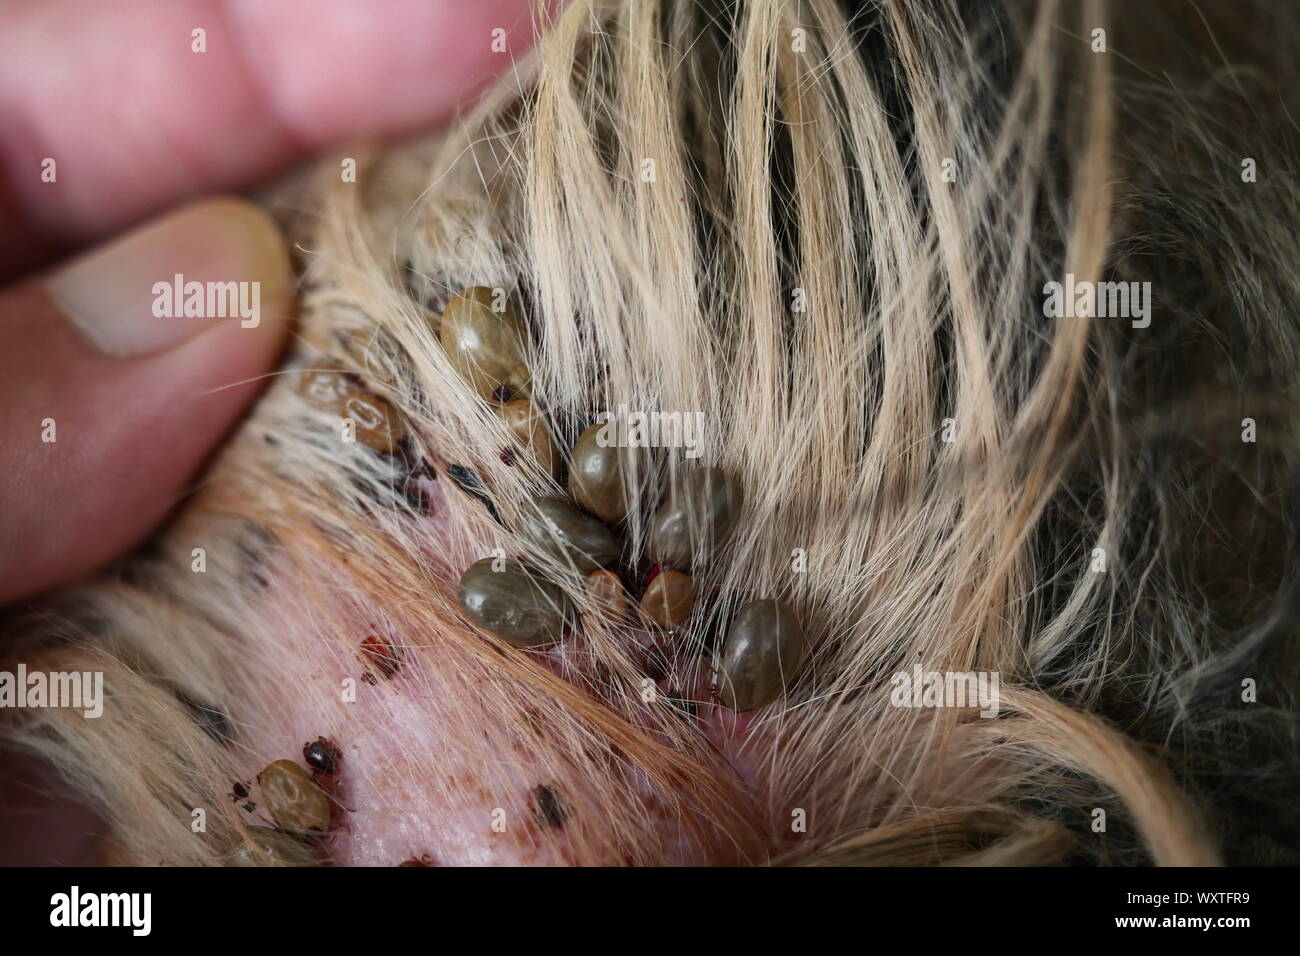 Gruppe von brauner Hund Zecken hund Ohr, die Zecke pumpt das Blut des Pet  Stockfotografie - Alamy